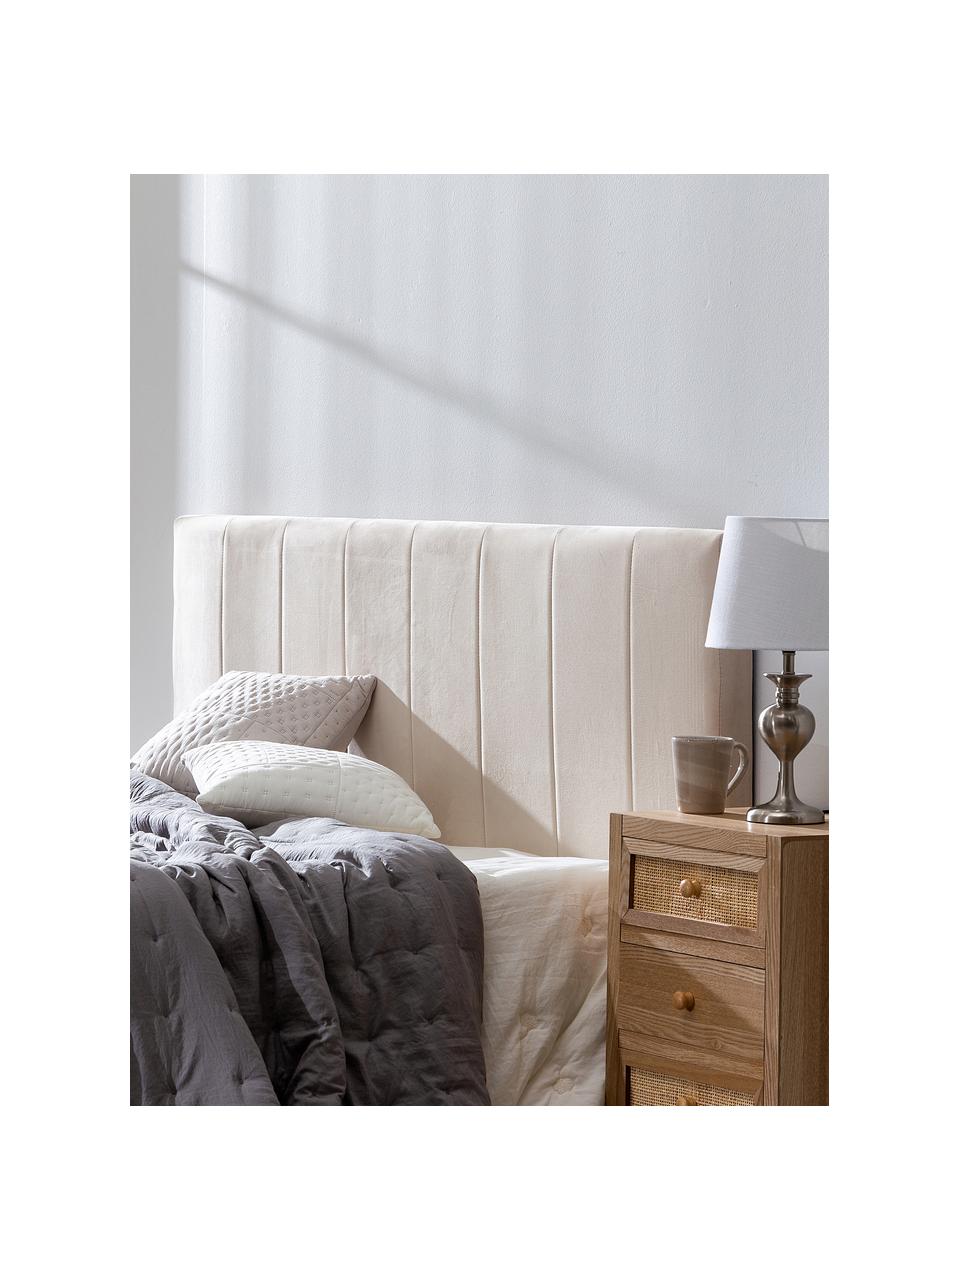 Zagłówek do łóżka tapicerowany z aksamitu Adrio, Tapicerka: 100% aksamit poliestrowy, Stelaż: drewno naturalne, metal, Beżowy aksamit, S 160 x W 64 cm